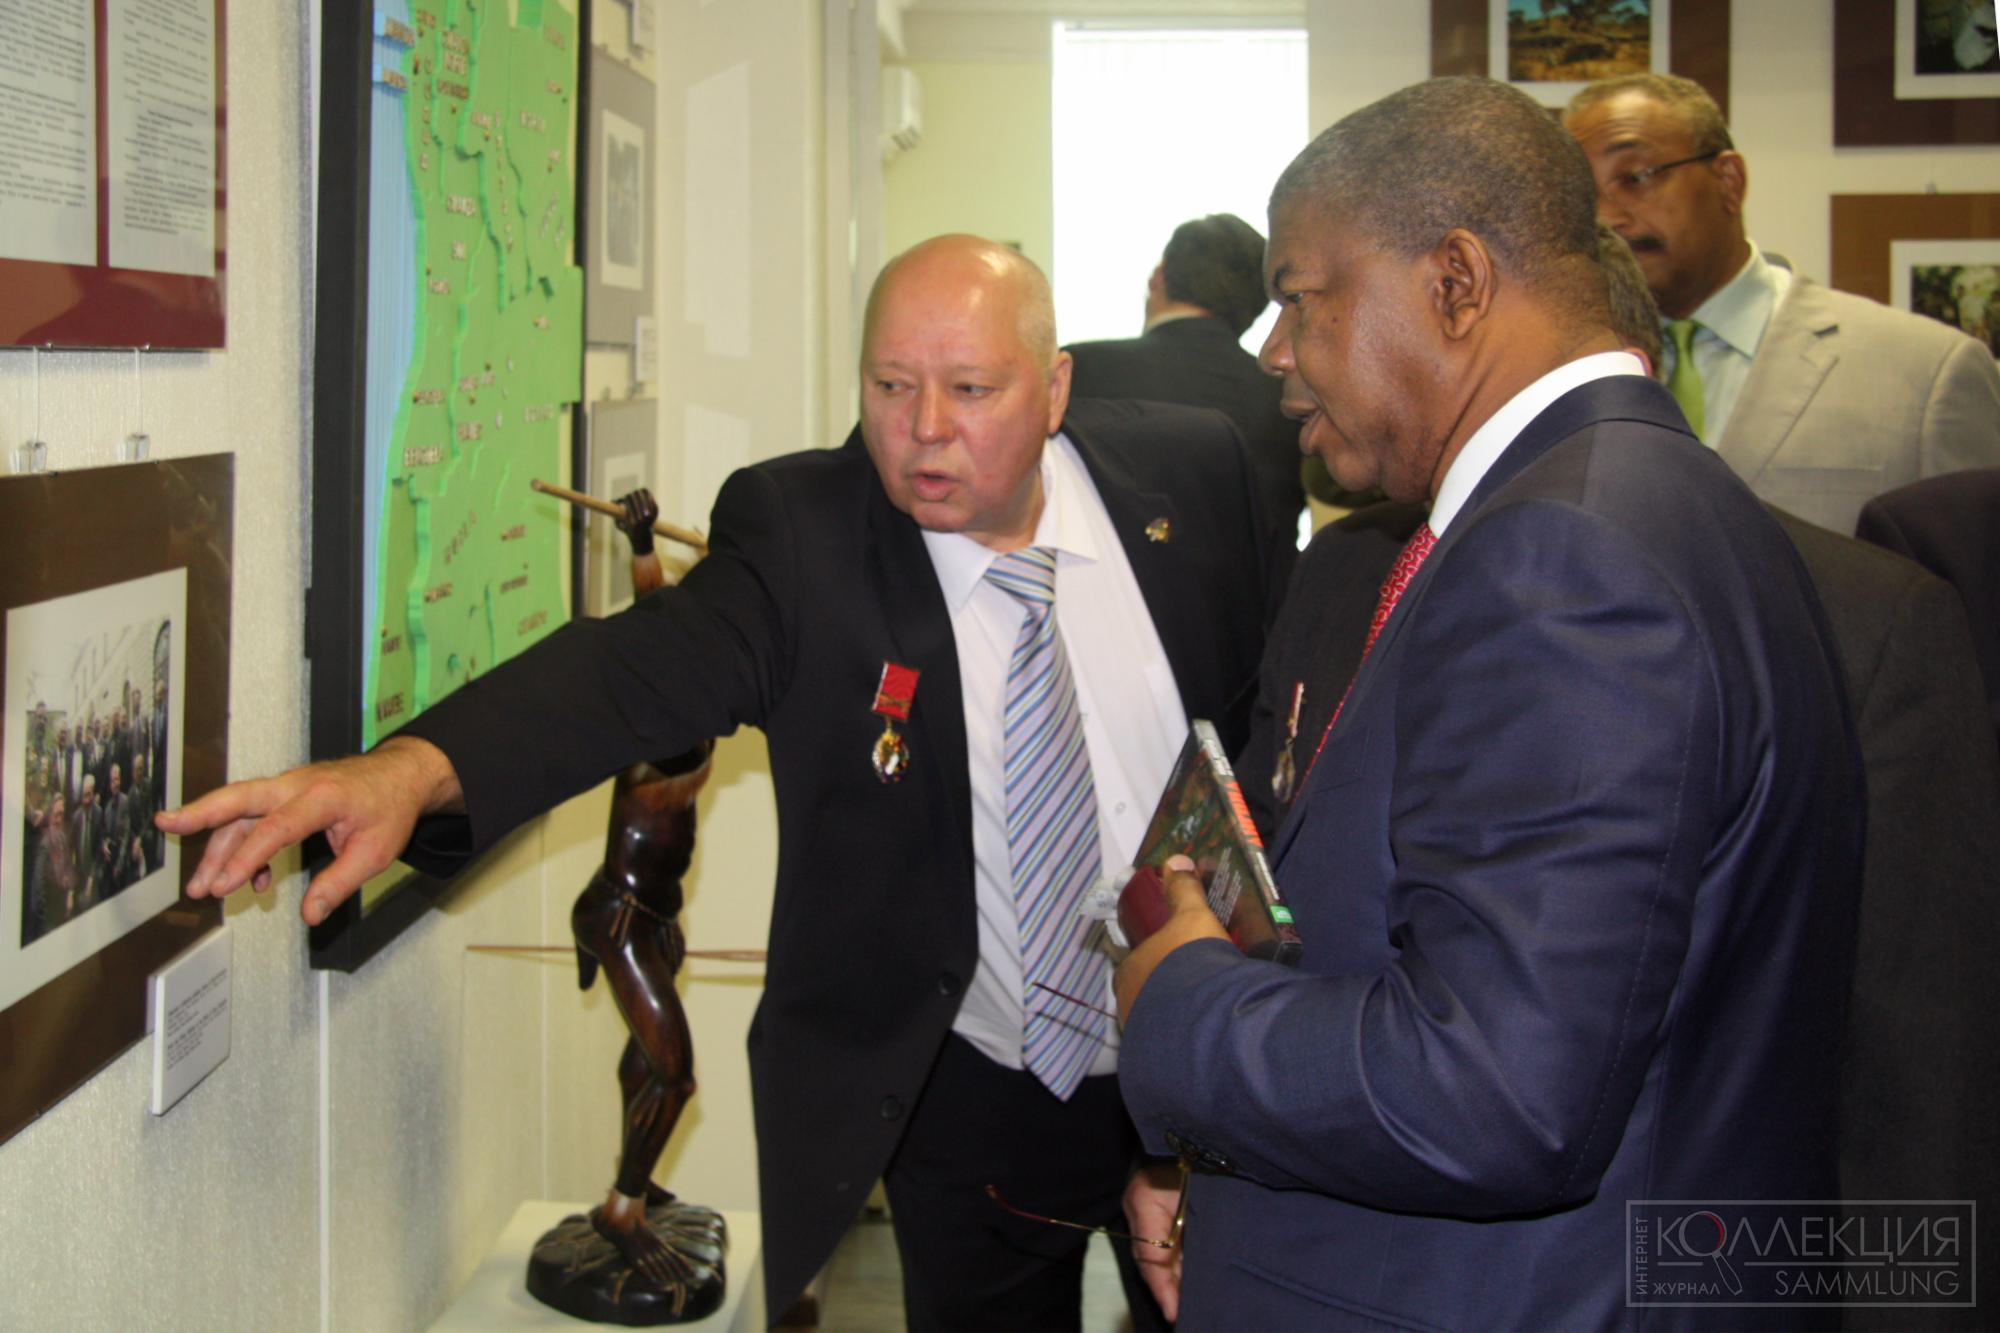 Посещение музея Союза ветеранов Анголы министром обороны Анголы Жоау Мануэлом Гонсалвешем Лоуренсу. 2015